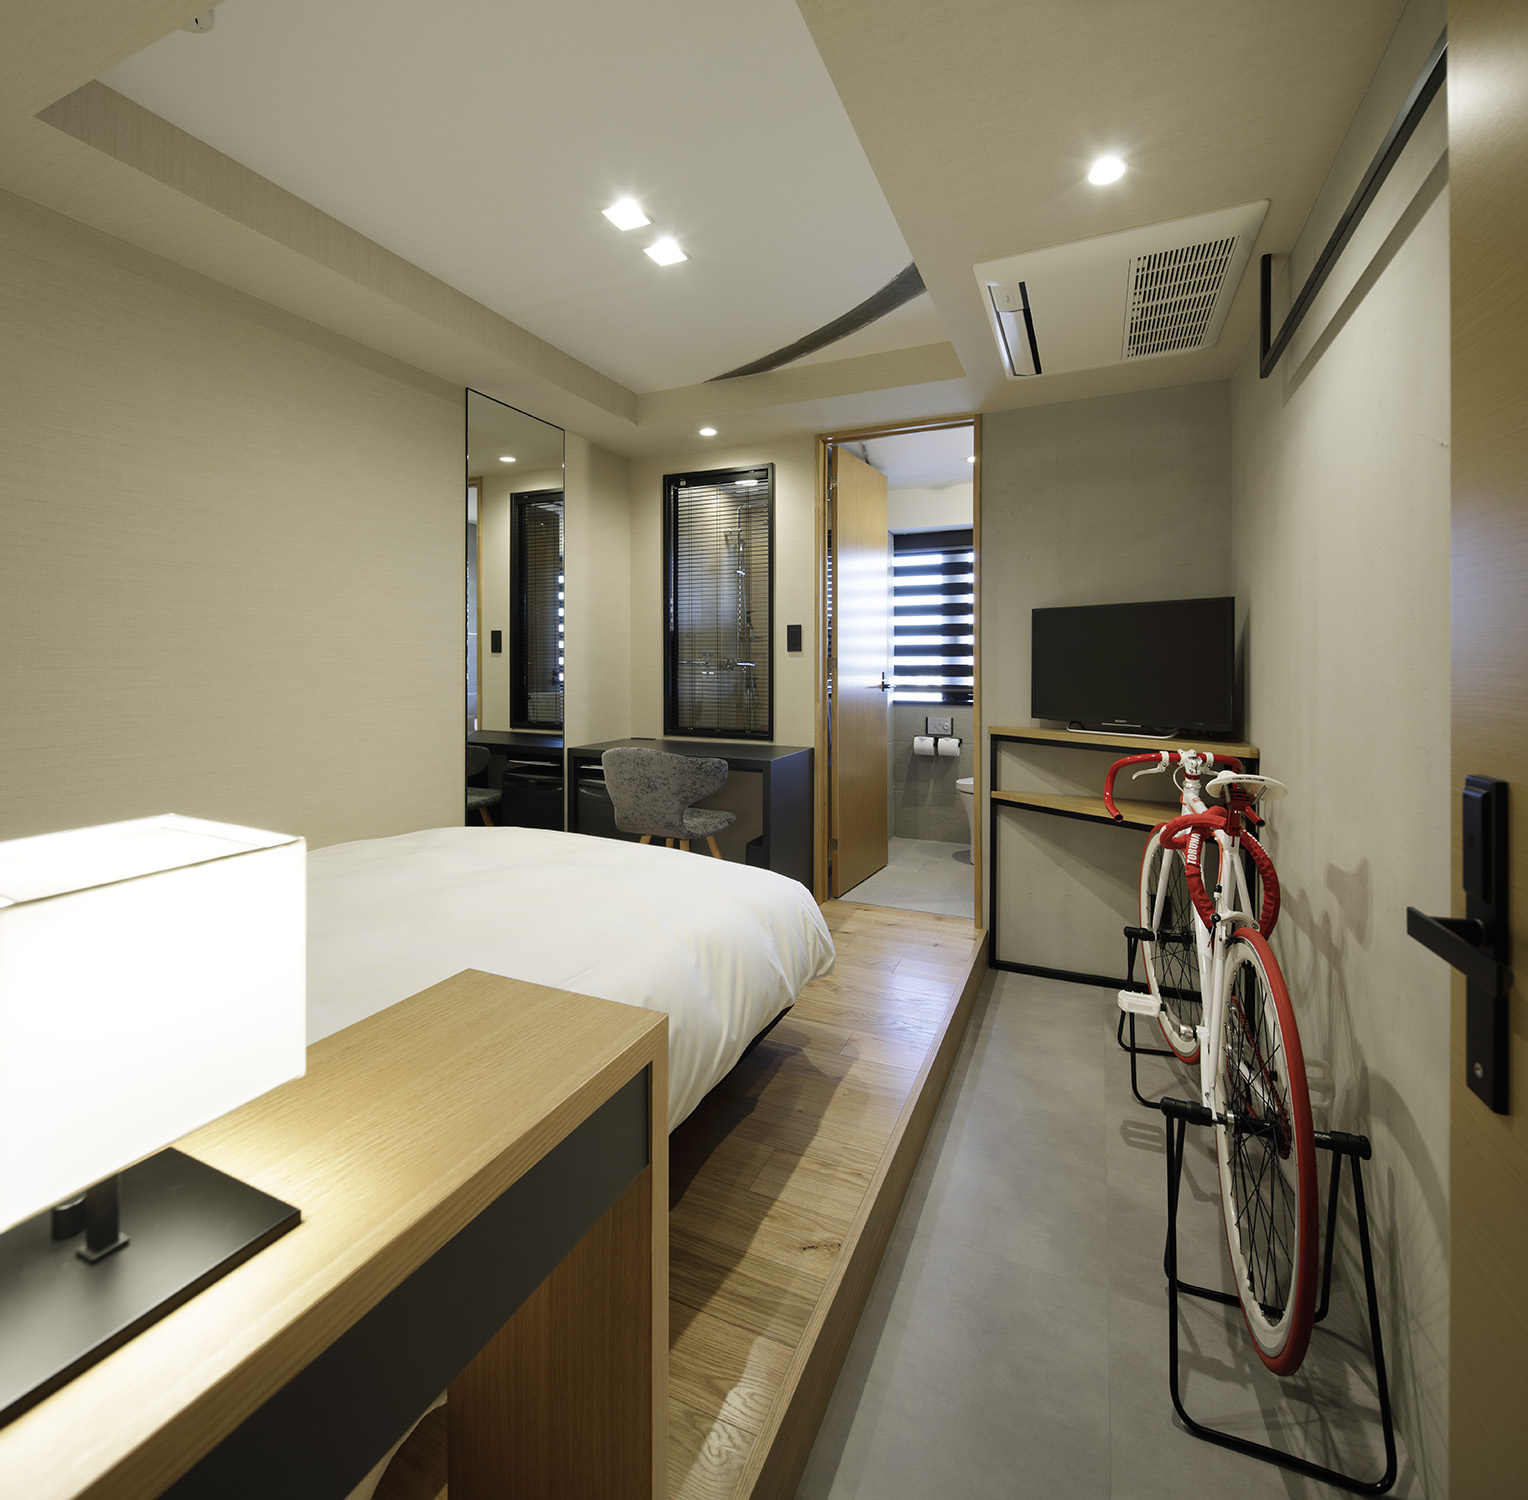 旅のパートナーである大切な自転車をお持ち込みいただける客室も用意しています。また、レセプションでは、メンテナンスアイテムの貸し出しをしています。